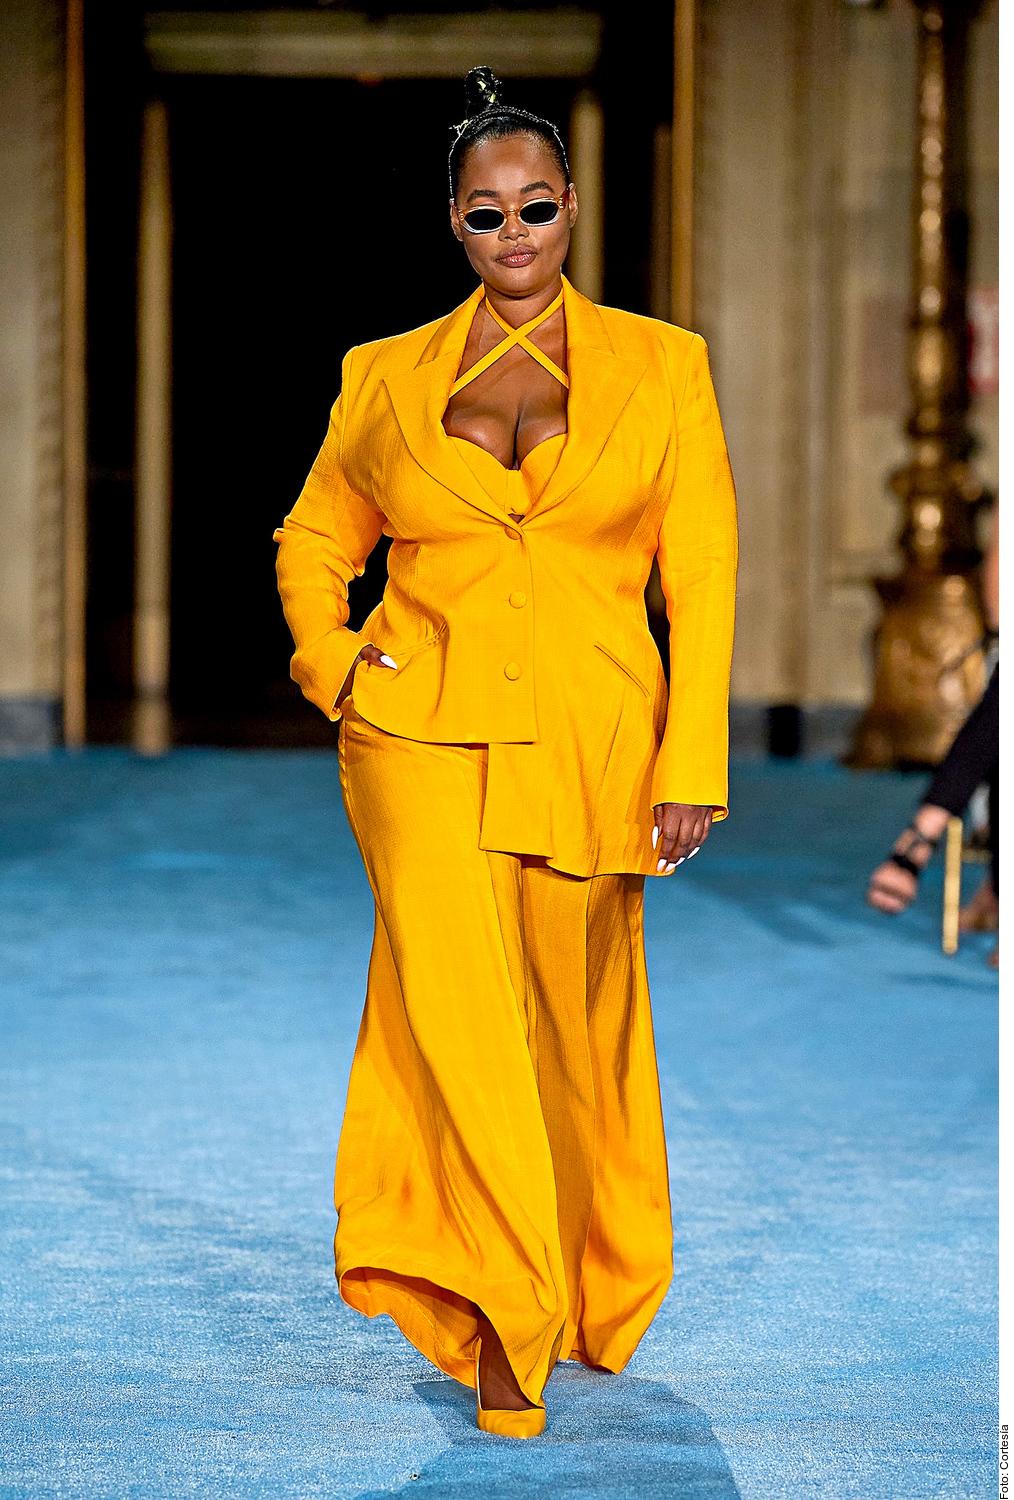 Nace el ‘namarillo’: De la combinación del naranja y el amarillo surge este tono llamado “yorange” en inglés, creado por Pandora Skyes, editora de moda del Sunday Times.